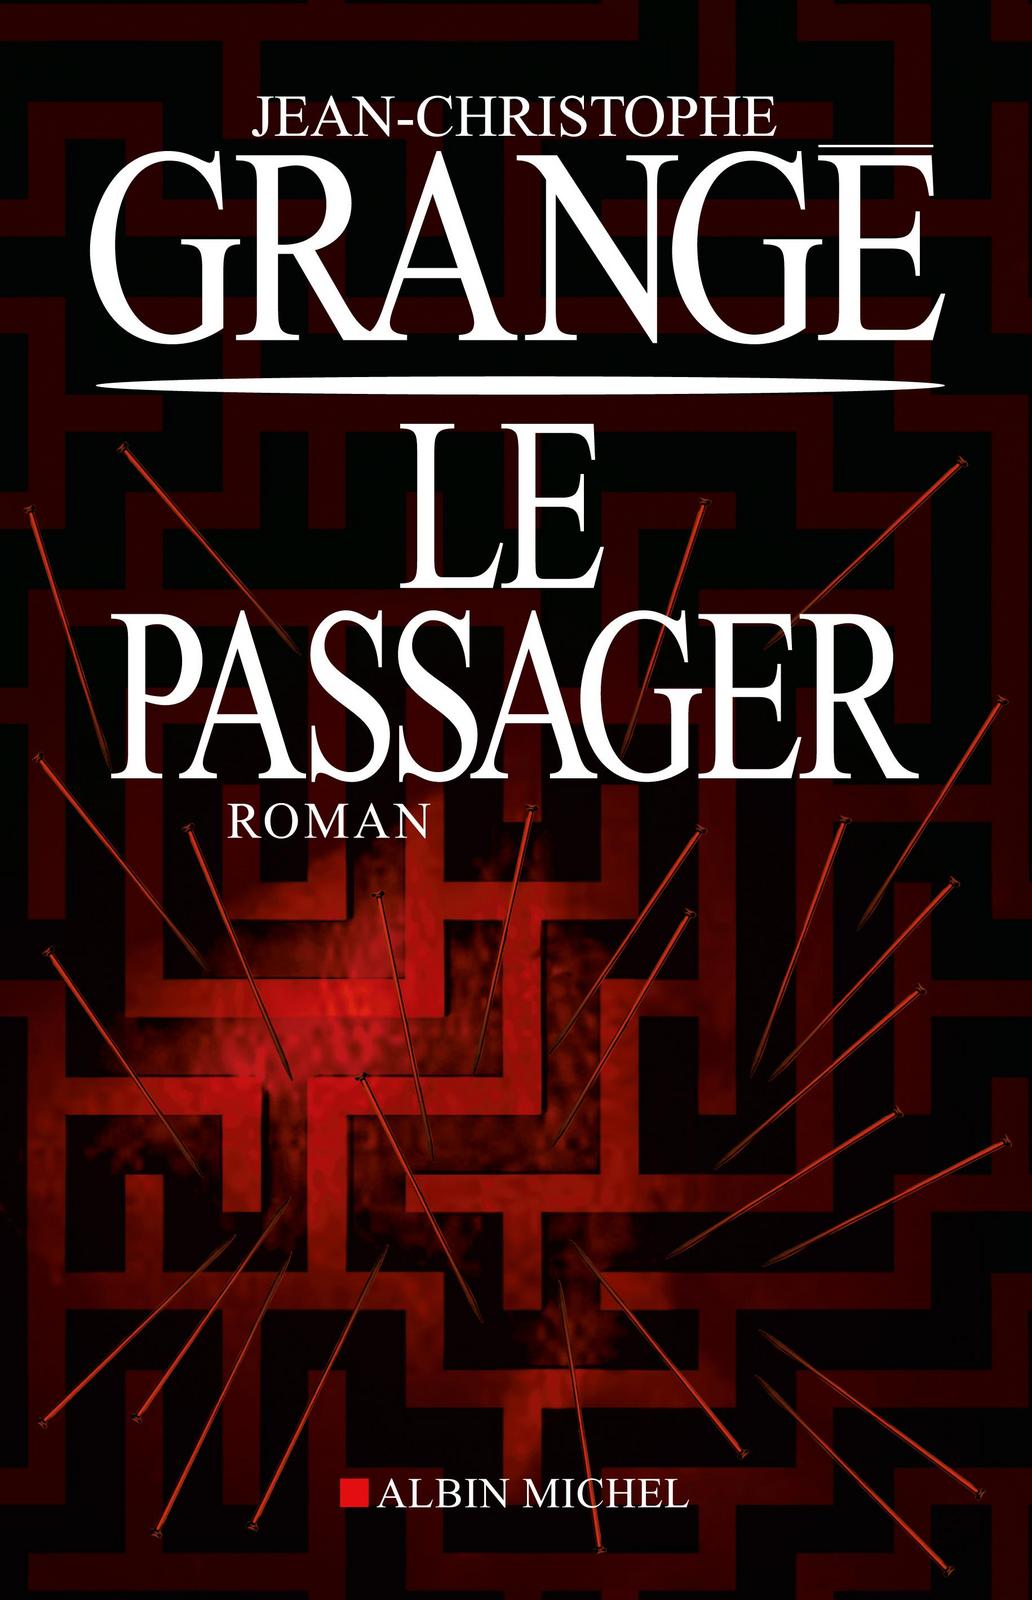 Jean-Christophe Grangé: Le passager (French language, 2011)